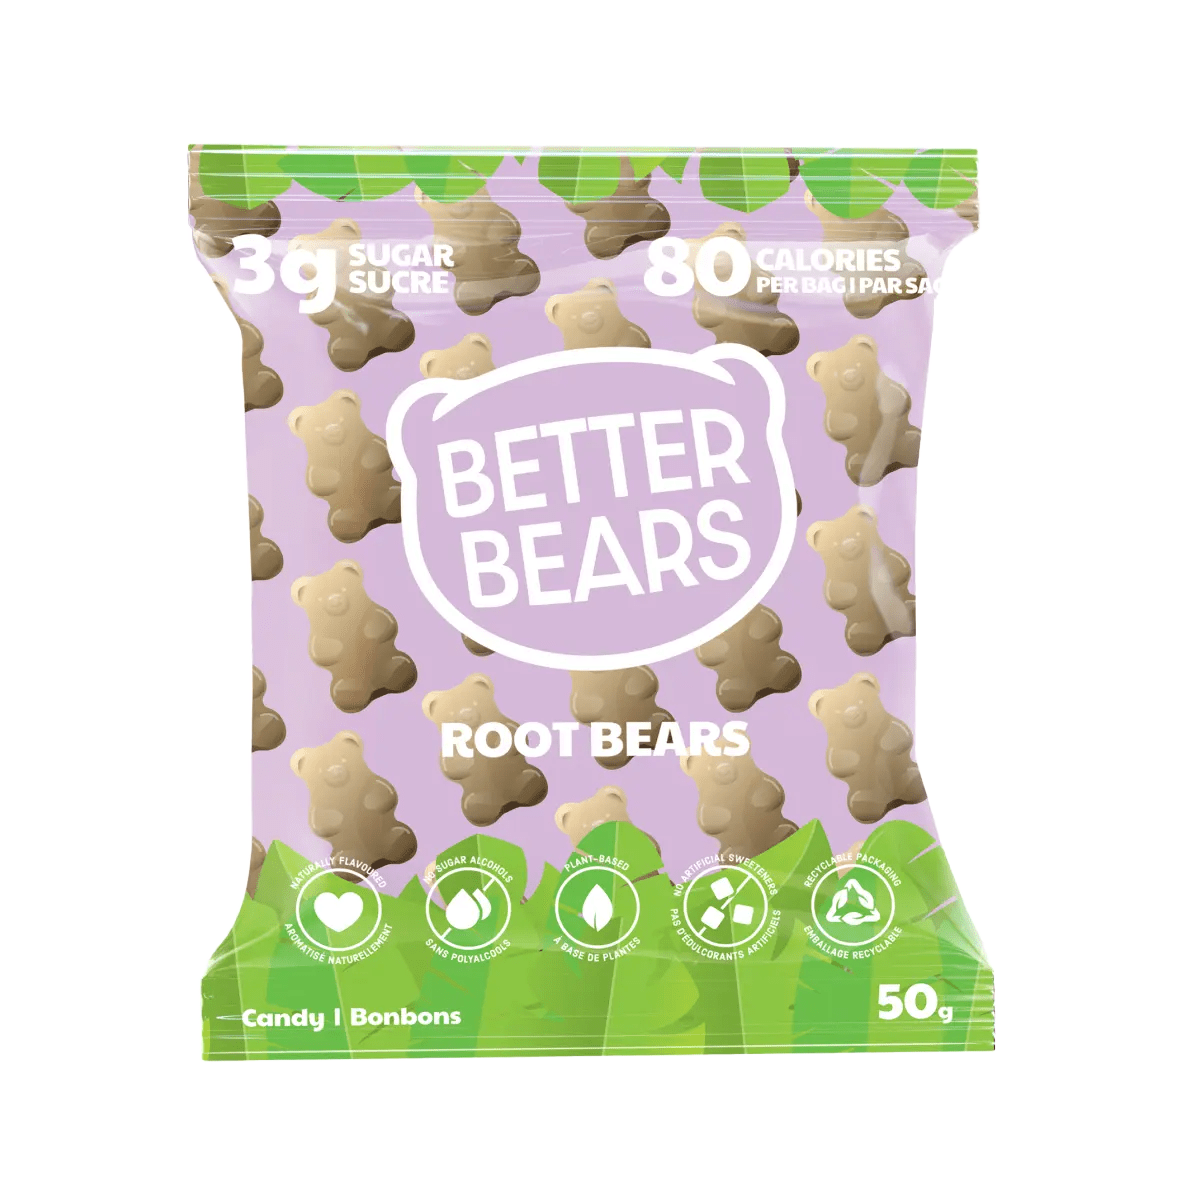 Gummibärchen von Better Bears